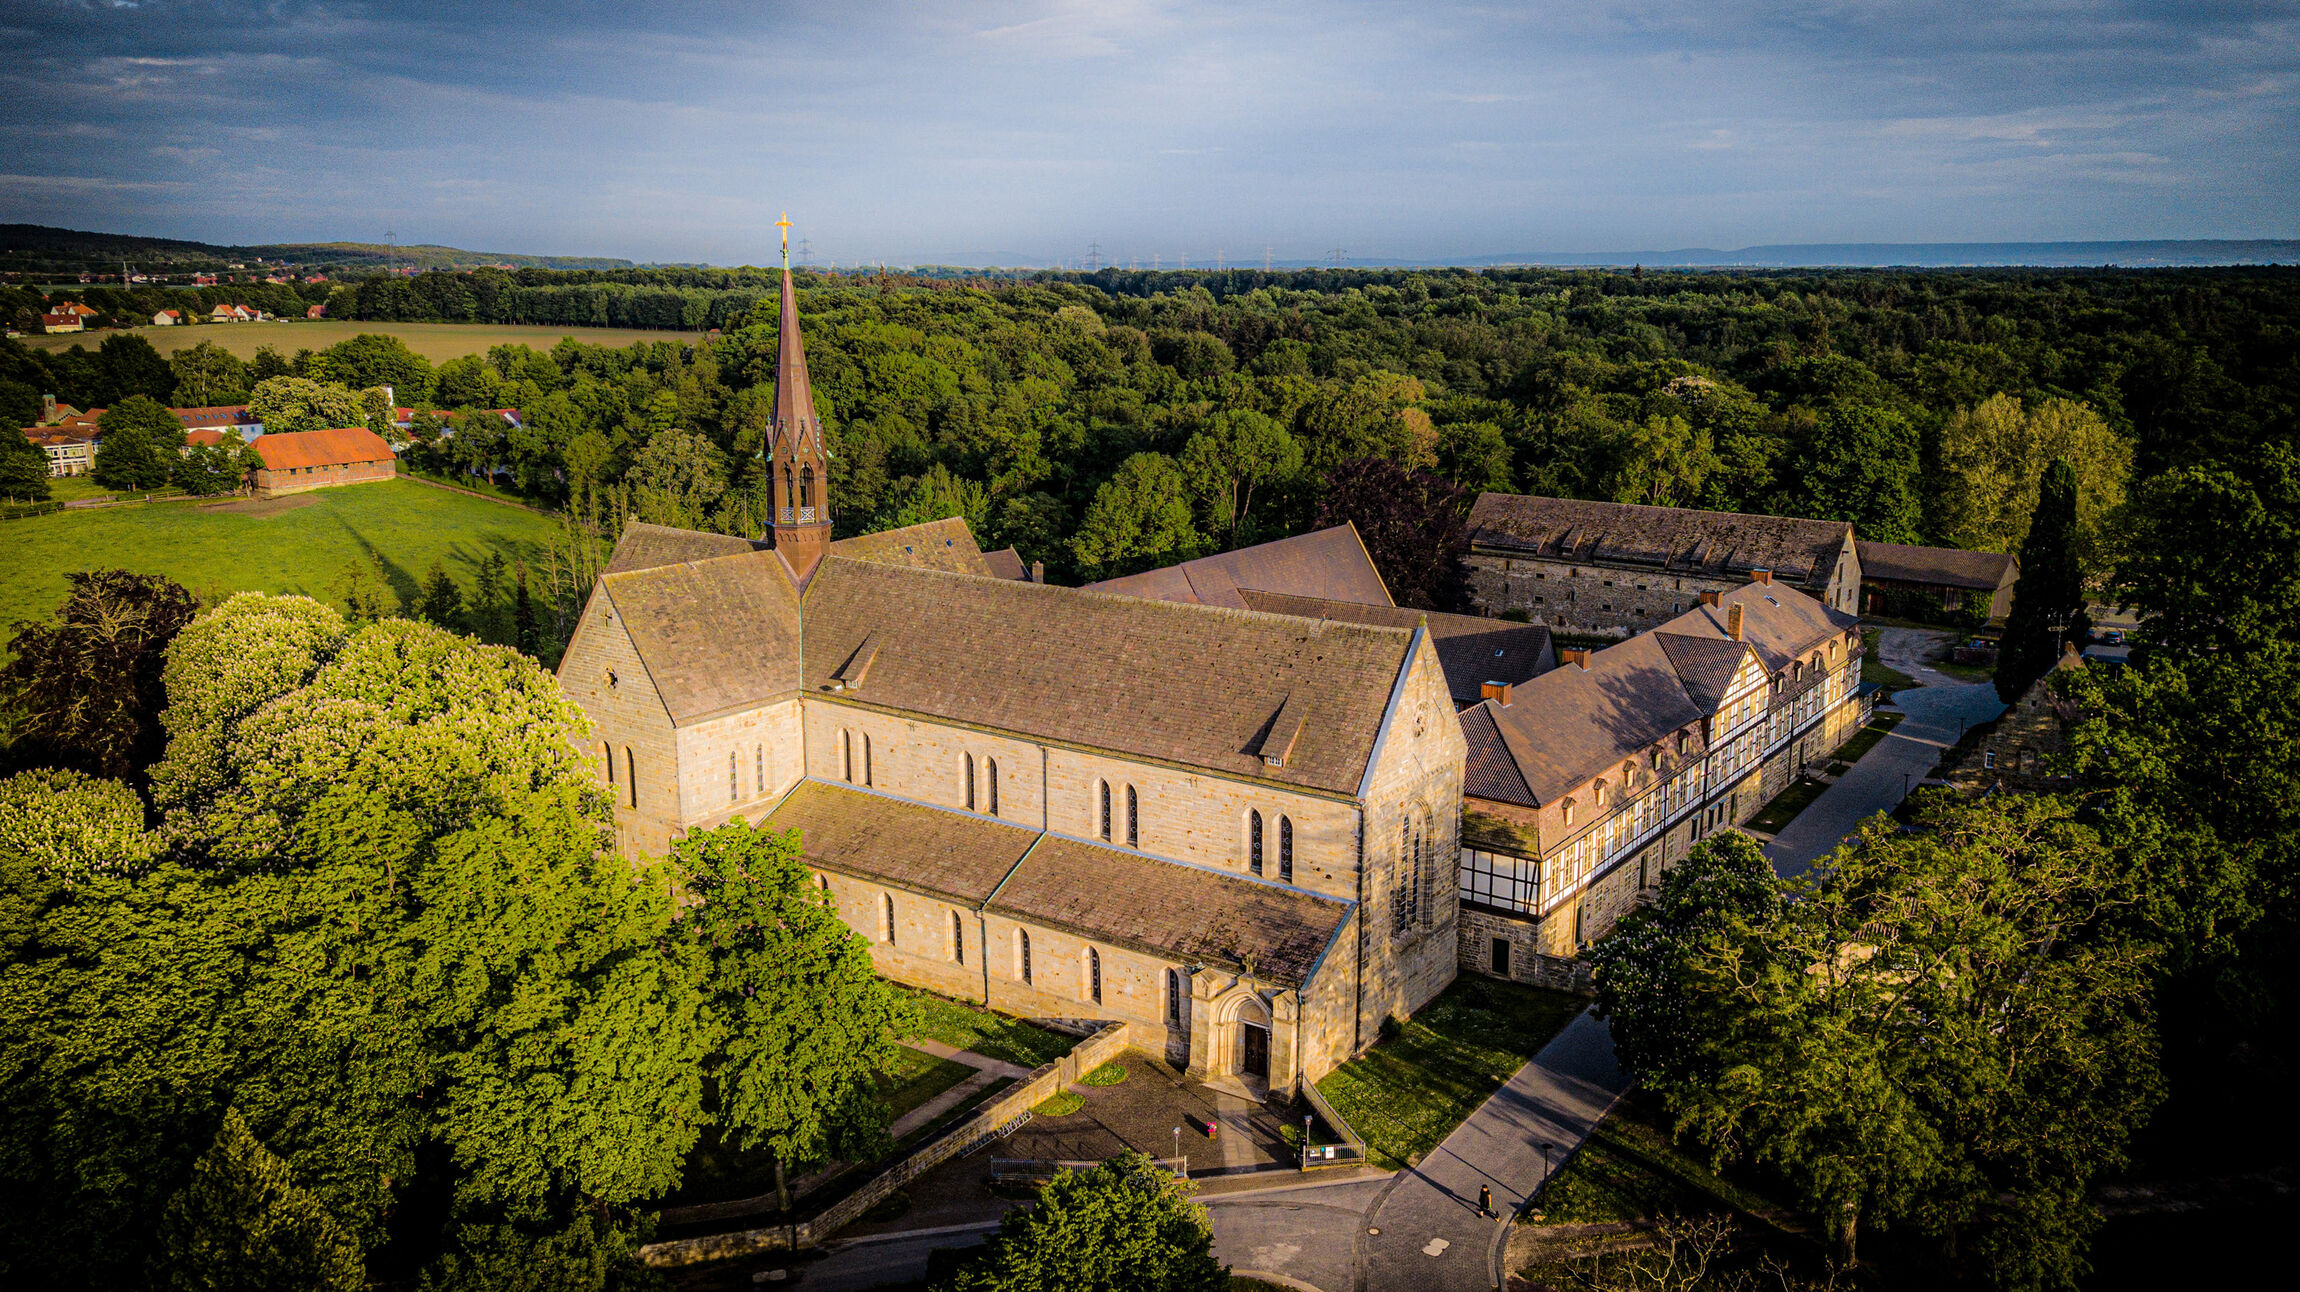 Das Kloster Loccum liegt auf der Route des europäischen „Weges der Zisterzienser“. Foto: Jens Schulze